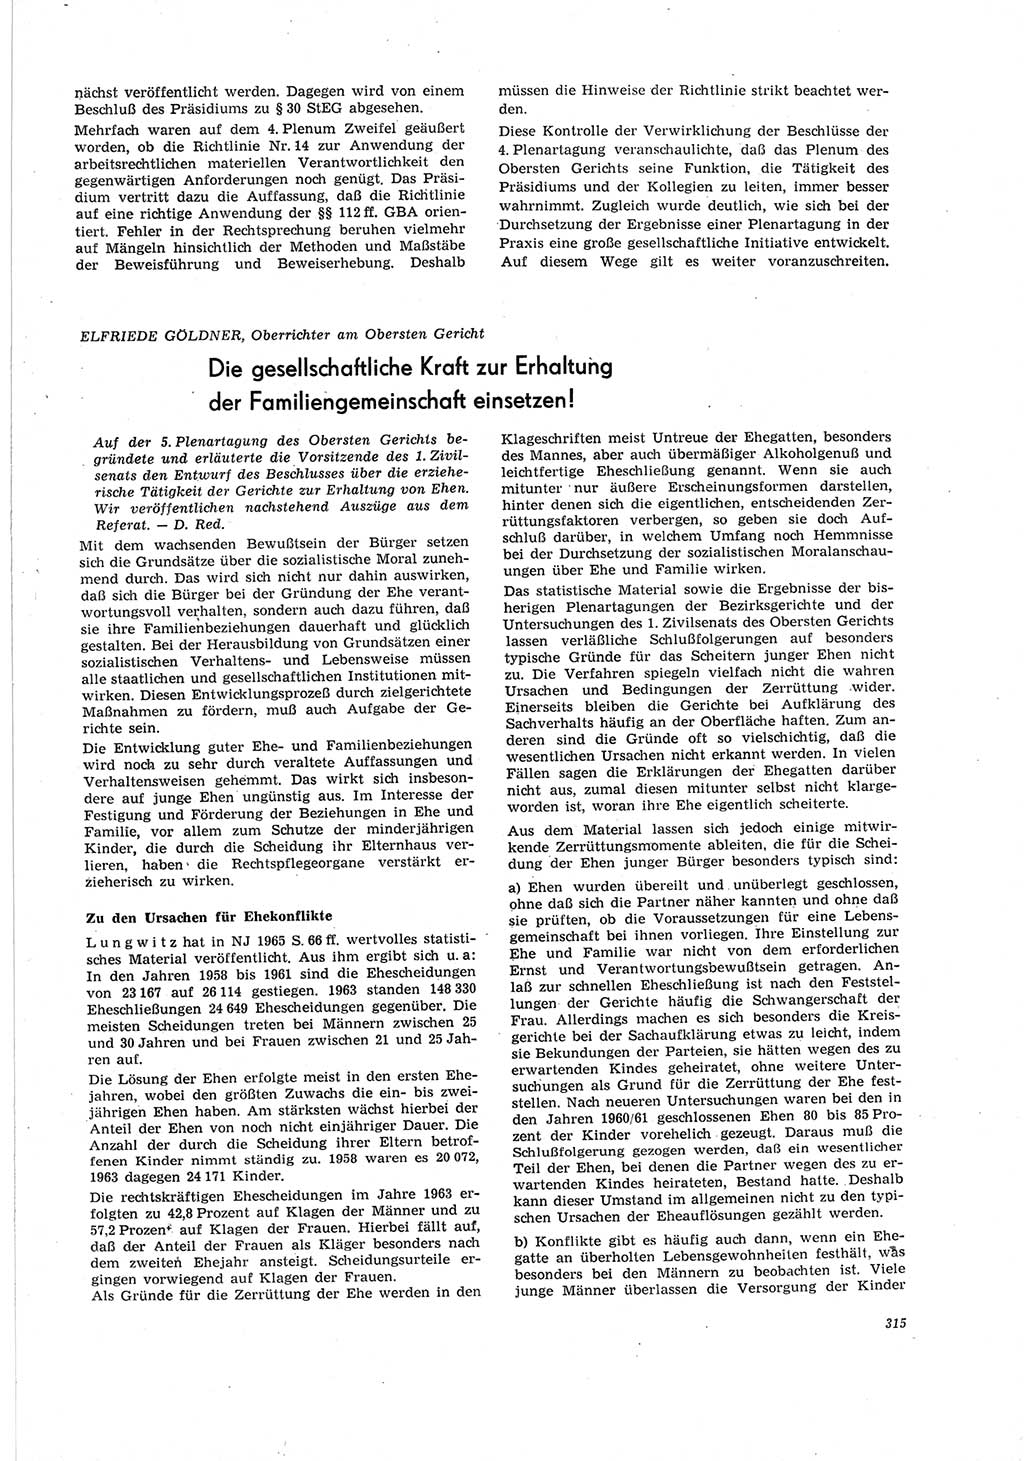 Neue Justiz (NJ), Zeitschrift für Recht und Rechtswissenschaft [Deutsche Demokratische Republik (DDR)], 19. Jahrgang 1965, Seite 315 (NJ DDR 1965, S. 315)